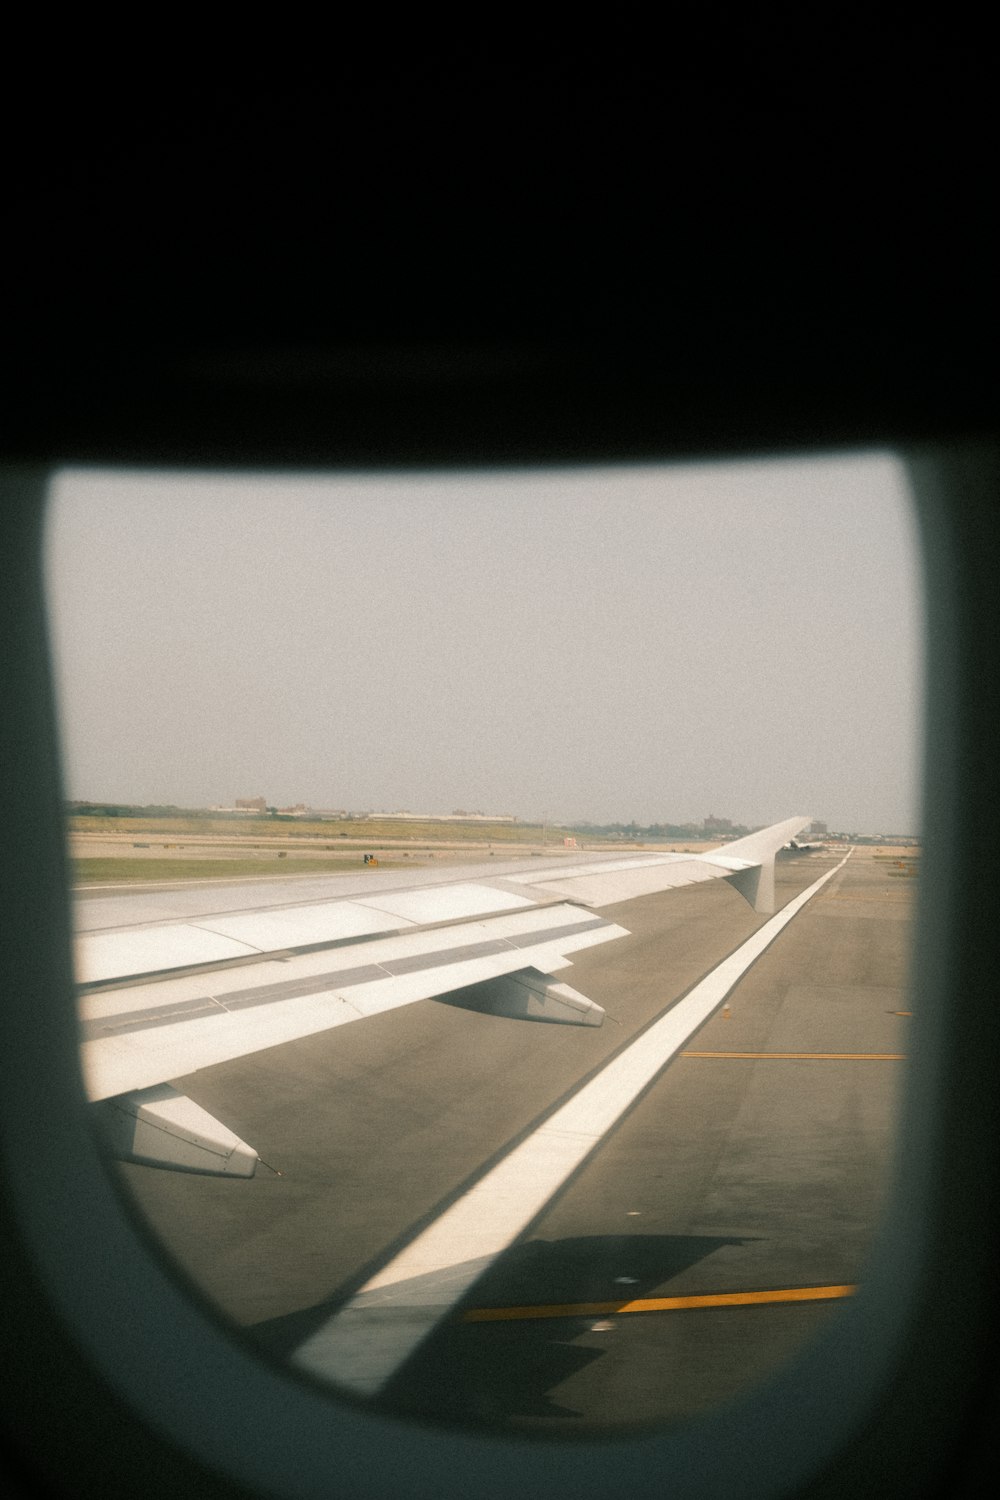 une vue de l’aile d’un avion depuis une fenêtre